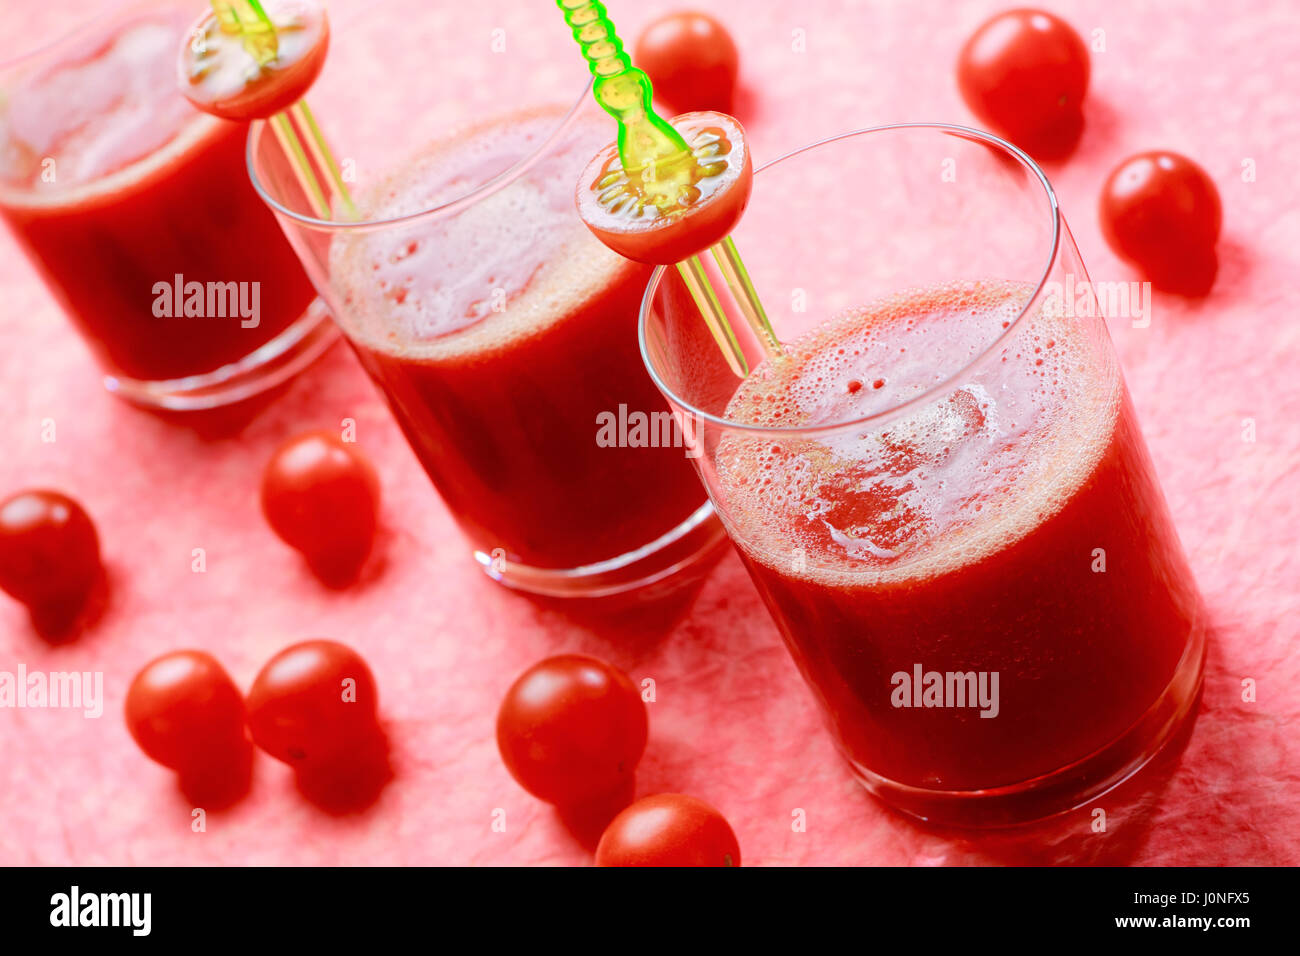 Tre Bicchieri con freschi succhi di pomodoro con pomodori ciliegia. Focus sul primo vetro. Foto Stock